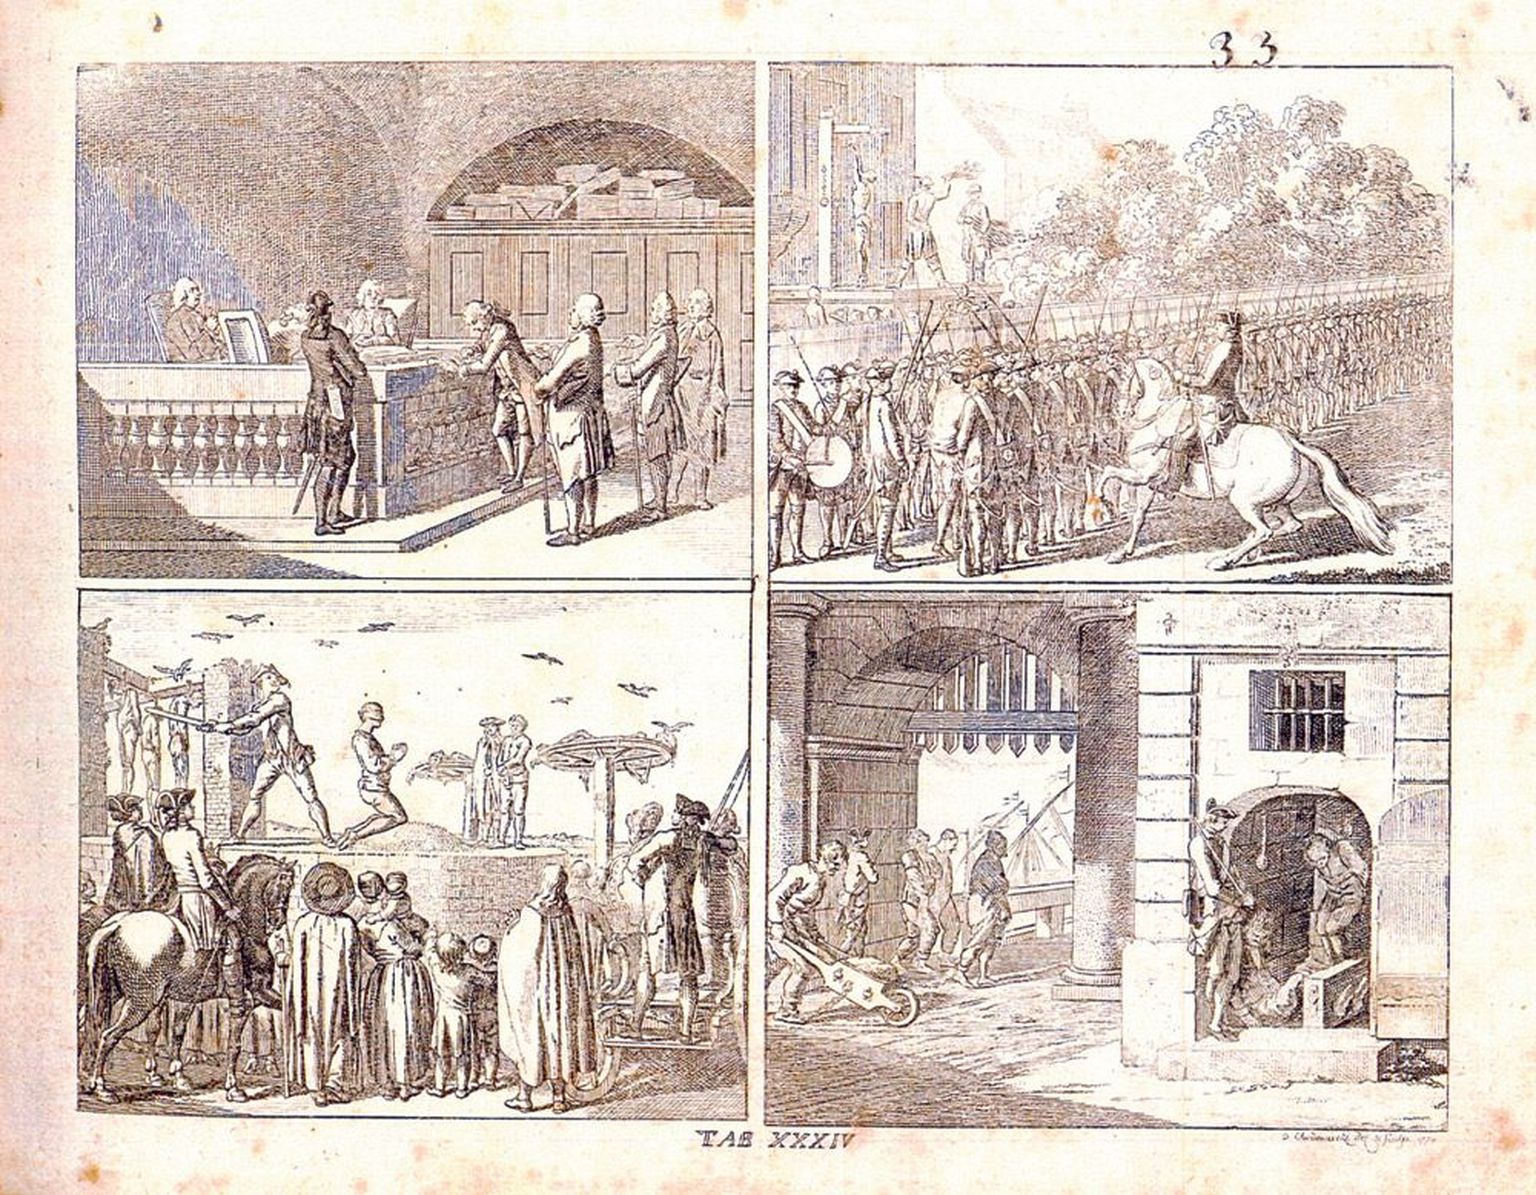 Üleval kohus ja kadalipp. All hukkamine võllamäel ja vangid kindlusevärava  juures. Daniel Nikolaus Chodowiecki illustratsioon Johann Bernhard Basedow 1774. aastal ilmunud raamatust «Elemetarwerk».